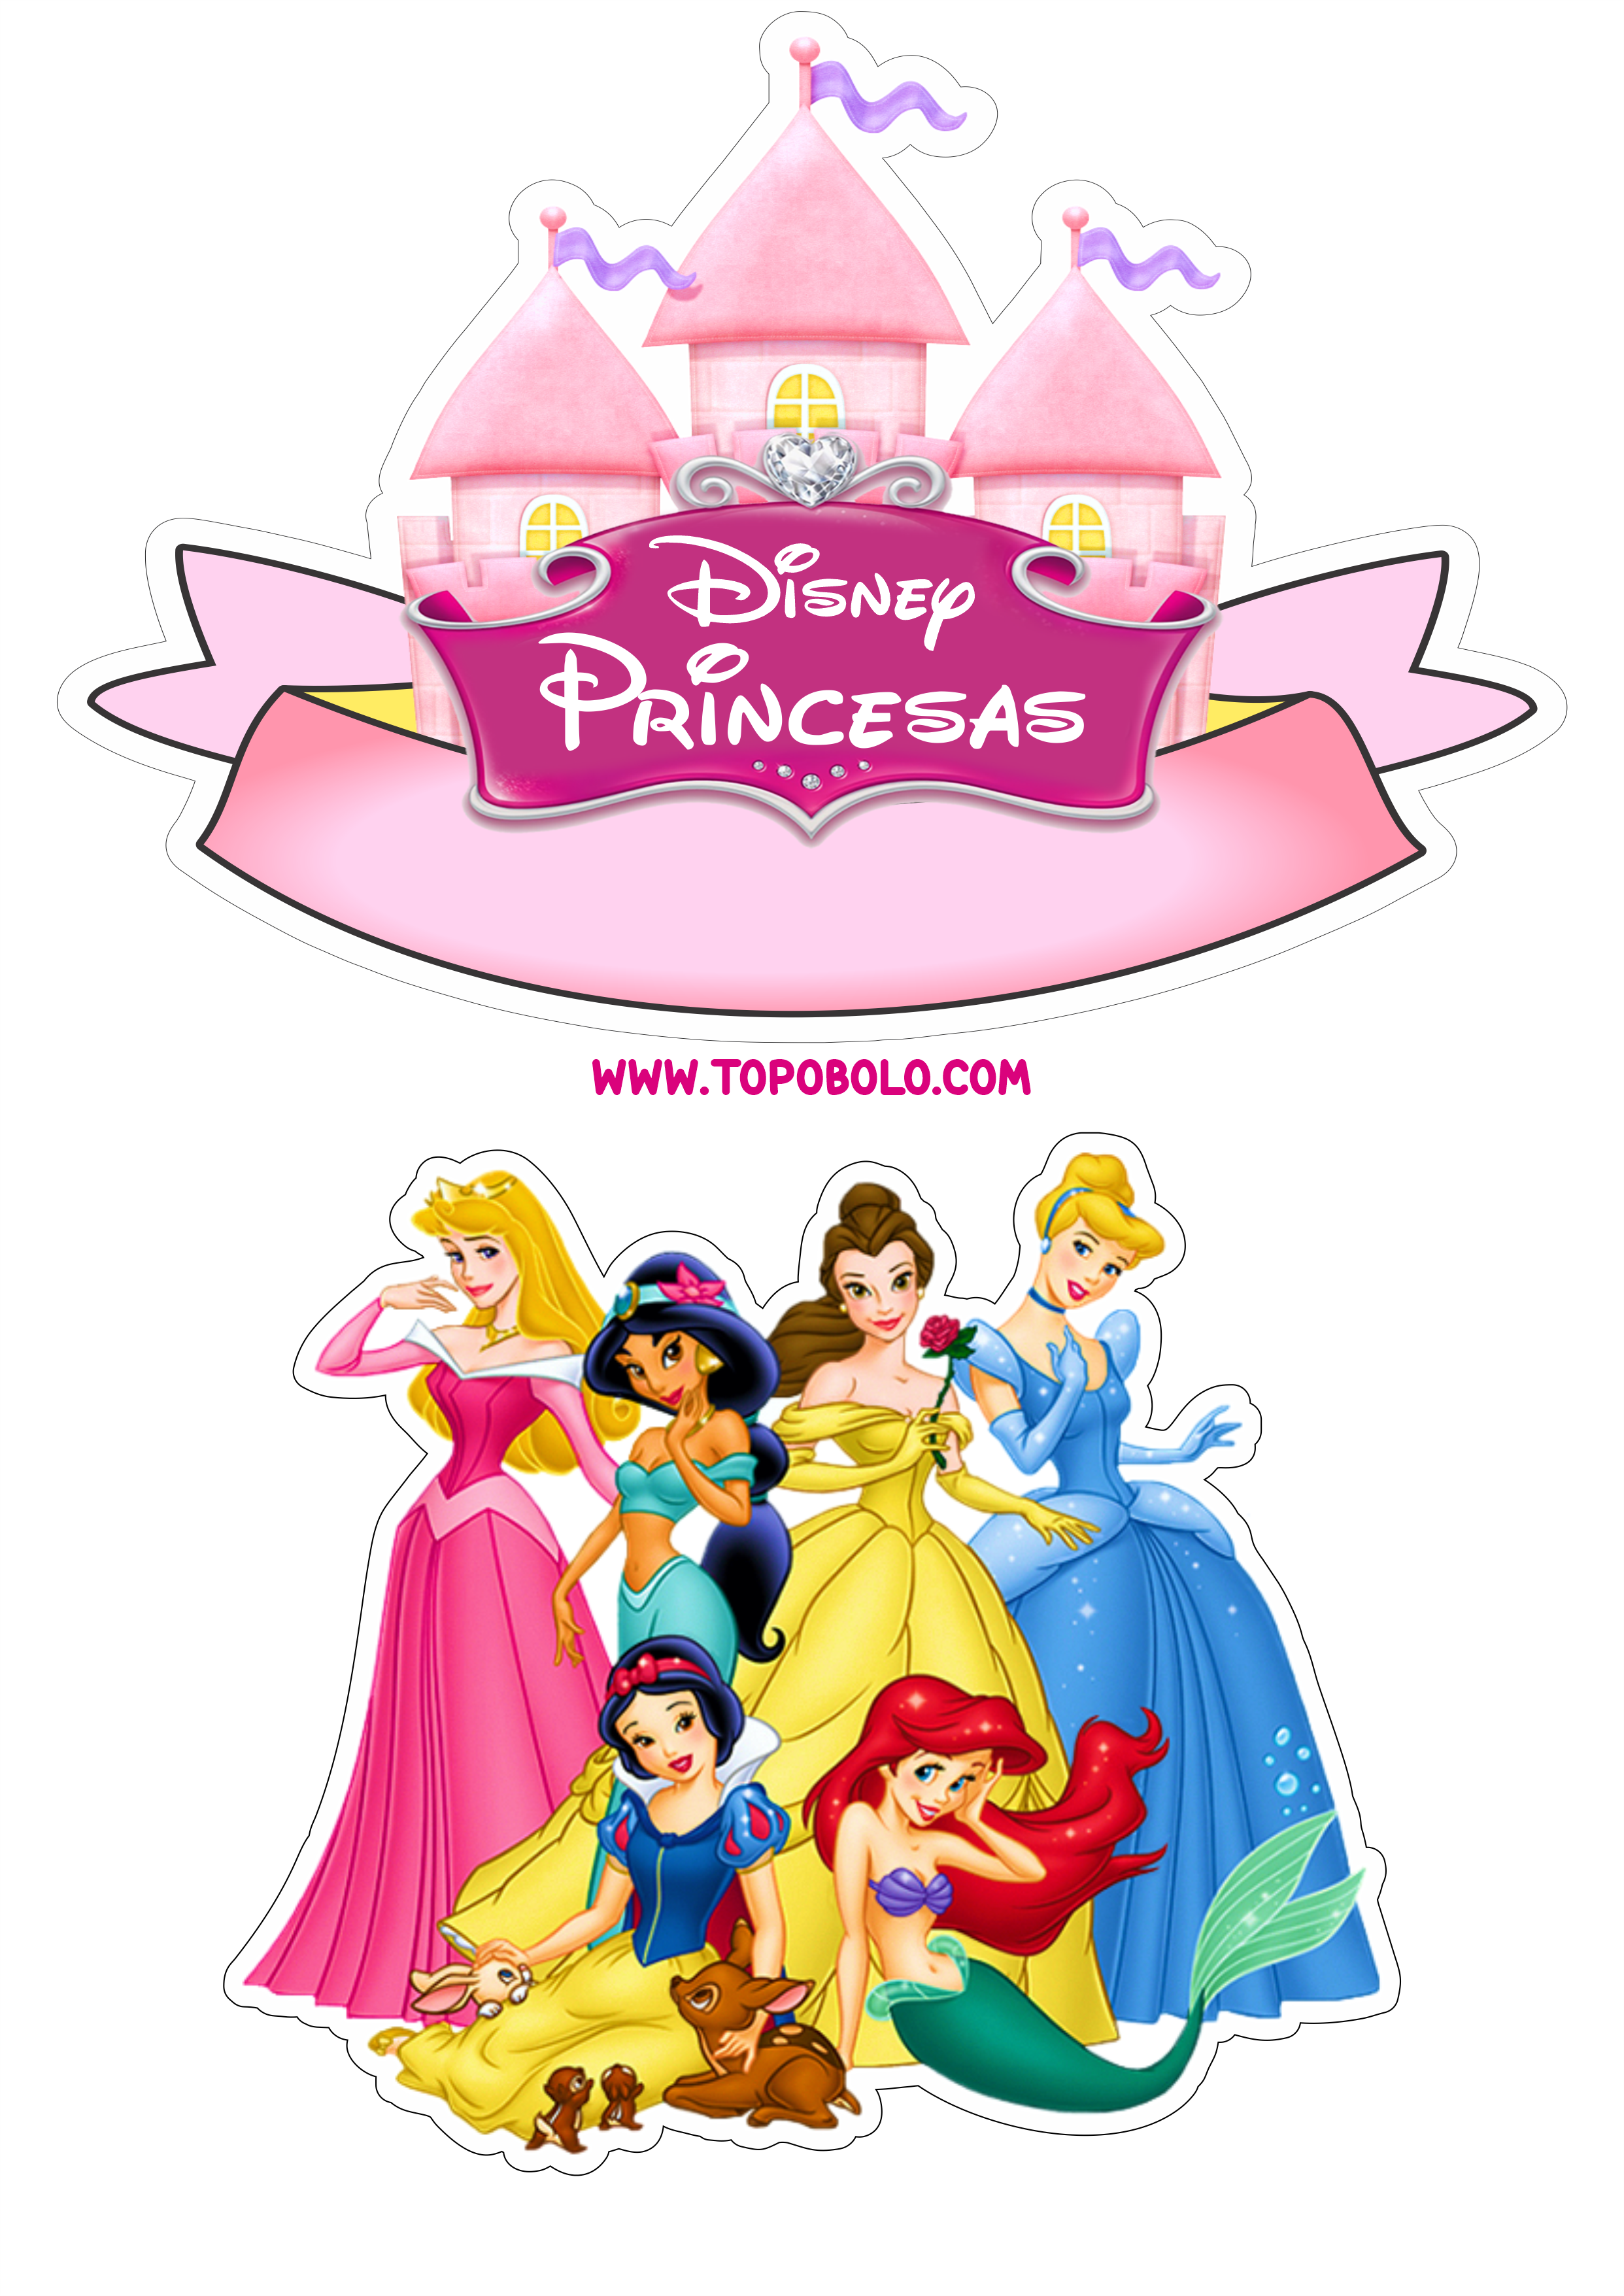 Princesas Disney topo de bolo pronto para imprimir aniversário infantil papelaria criativa artes gráficas renda extra png